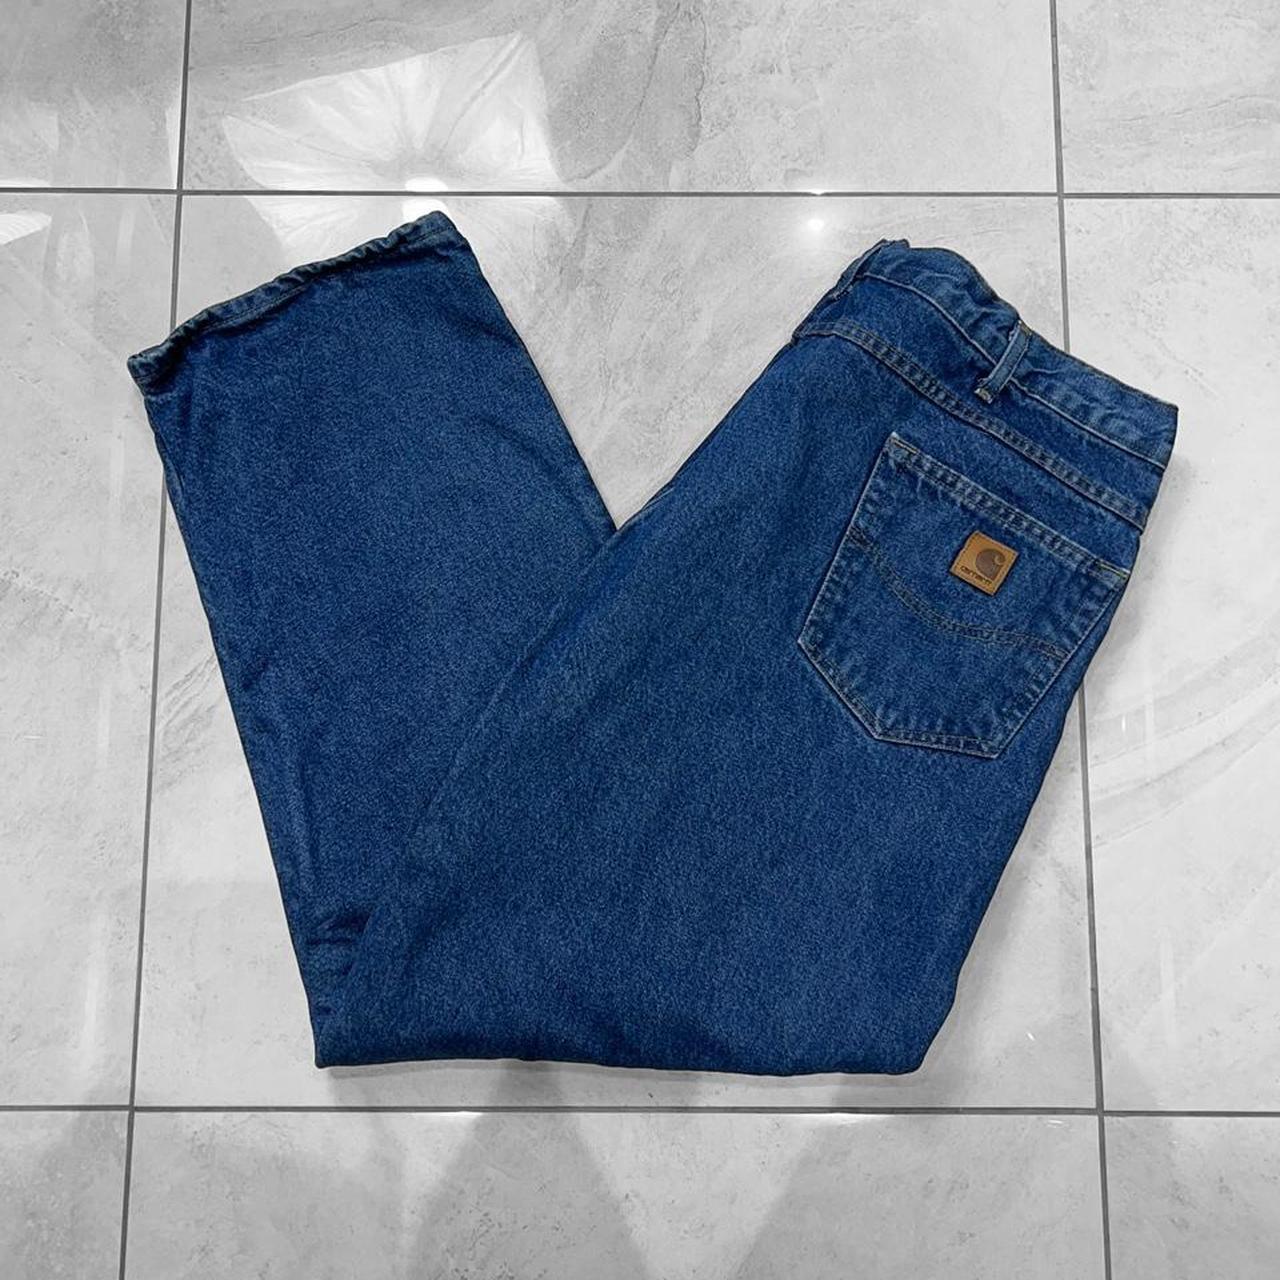 Carhartt lined blue jeans Size - 42 waist ... - Depop